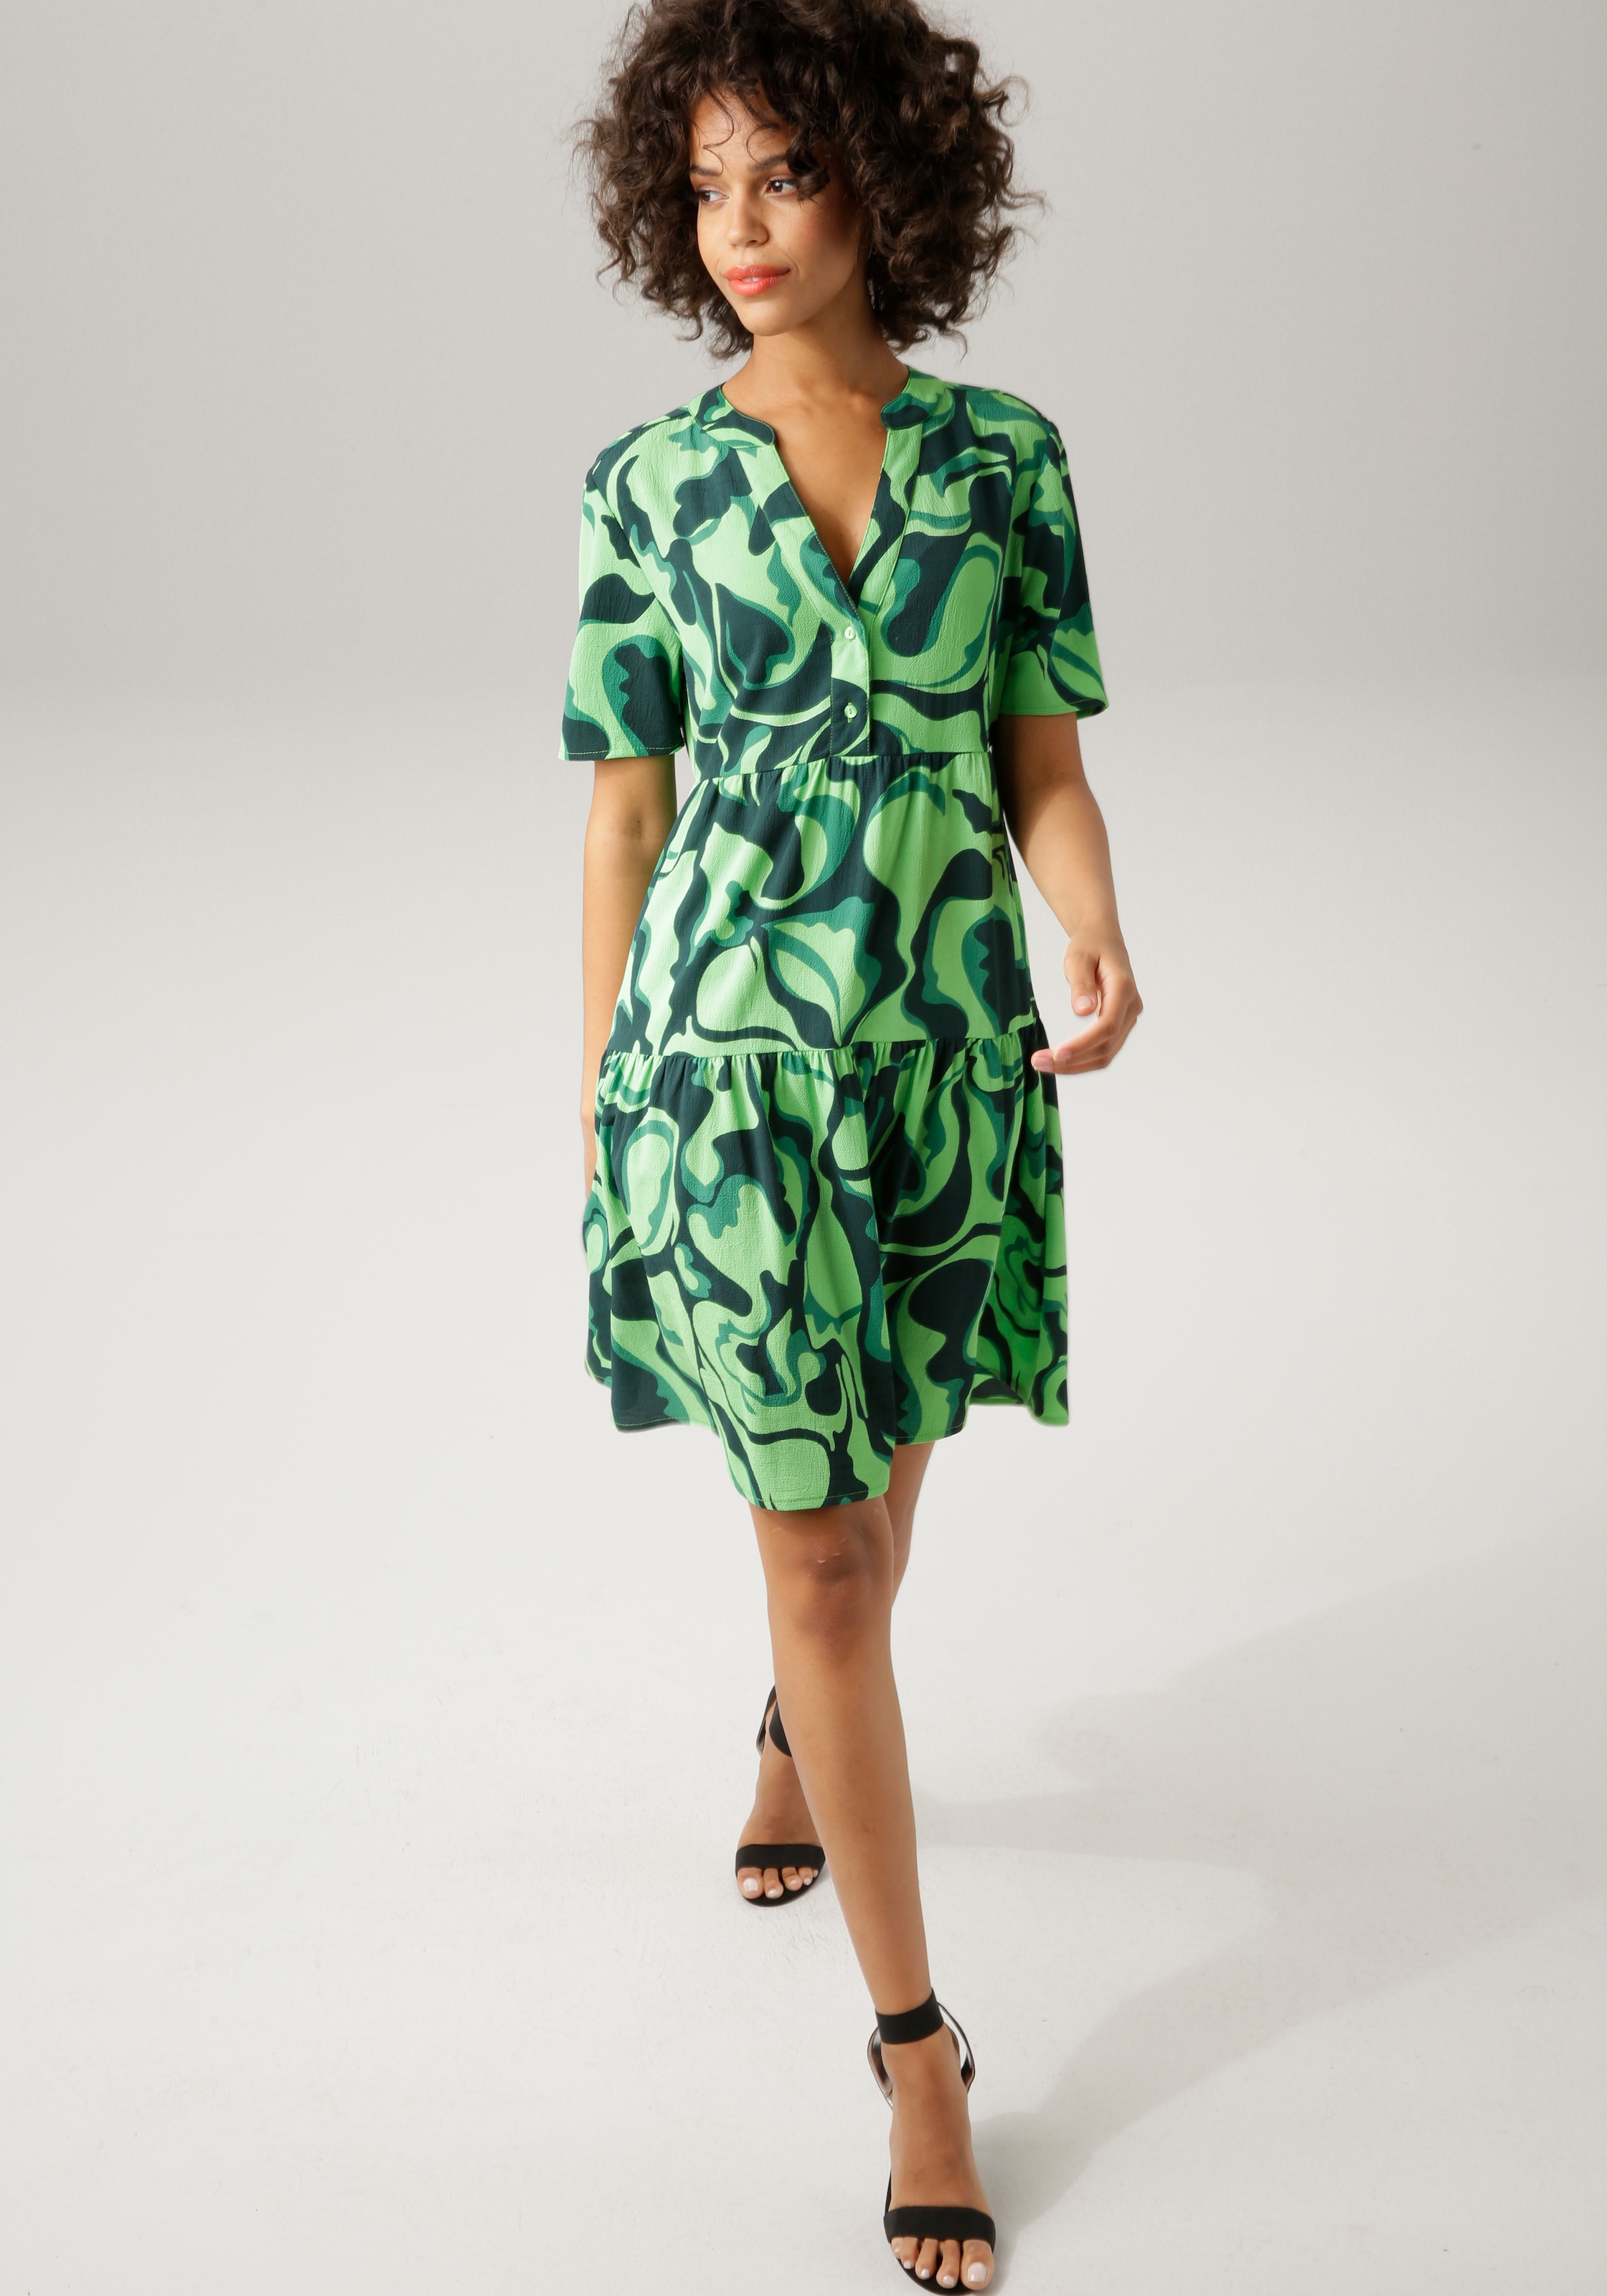 Aniston CASUAL Sommerkleid, mit farbenfrohem, graphischem Druck